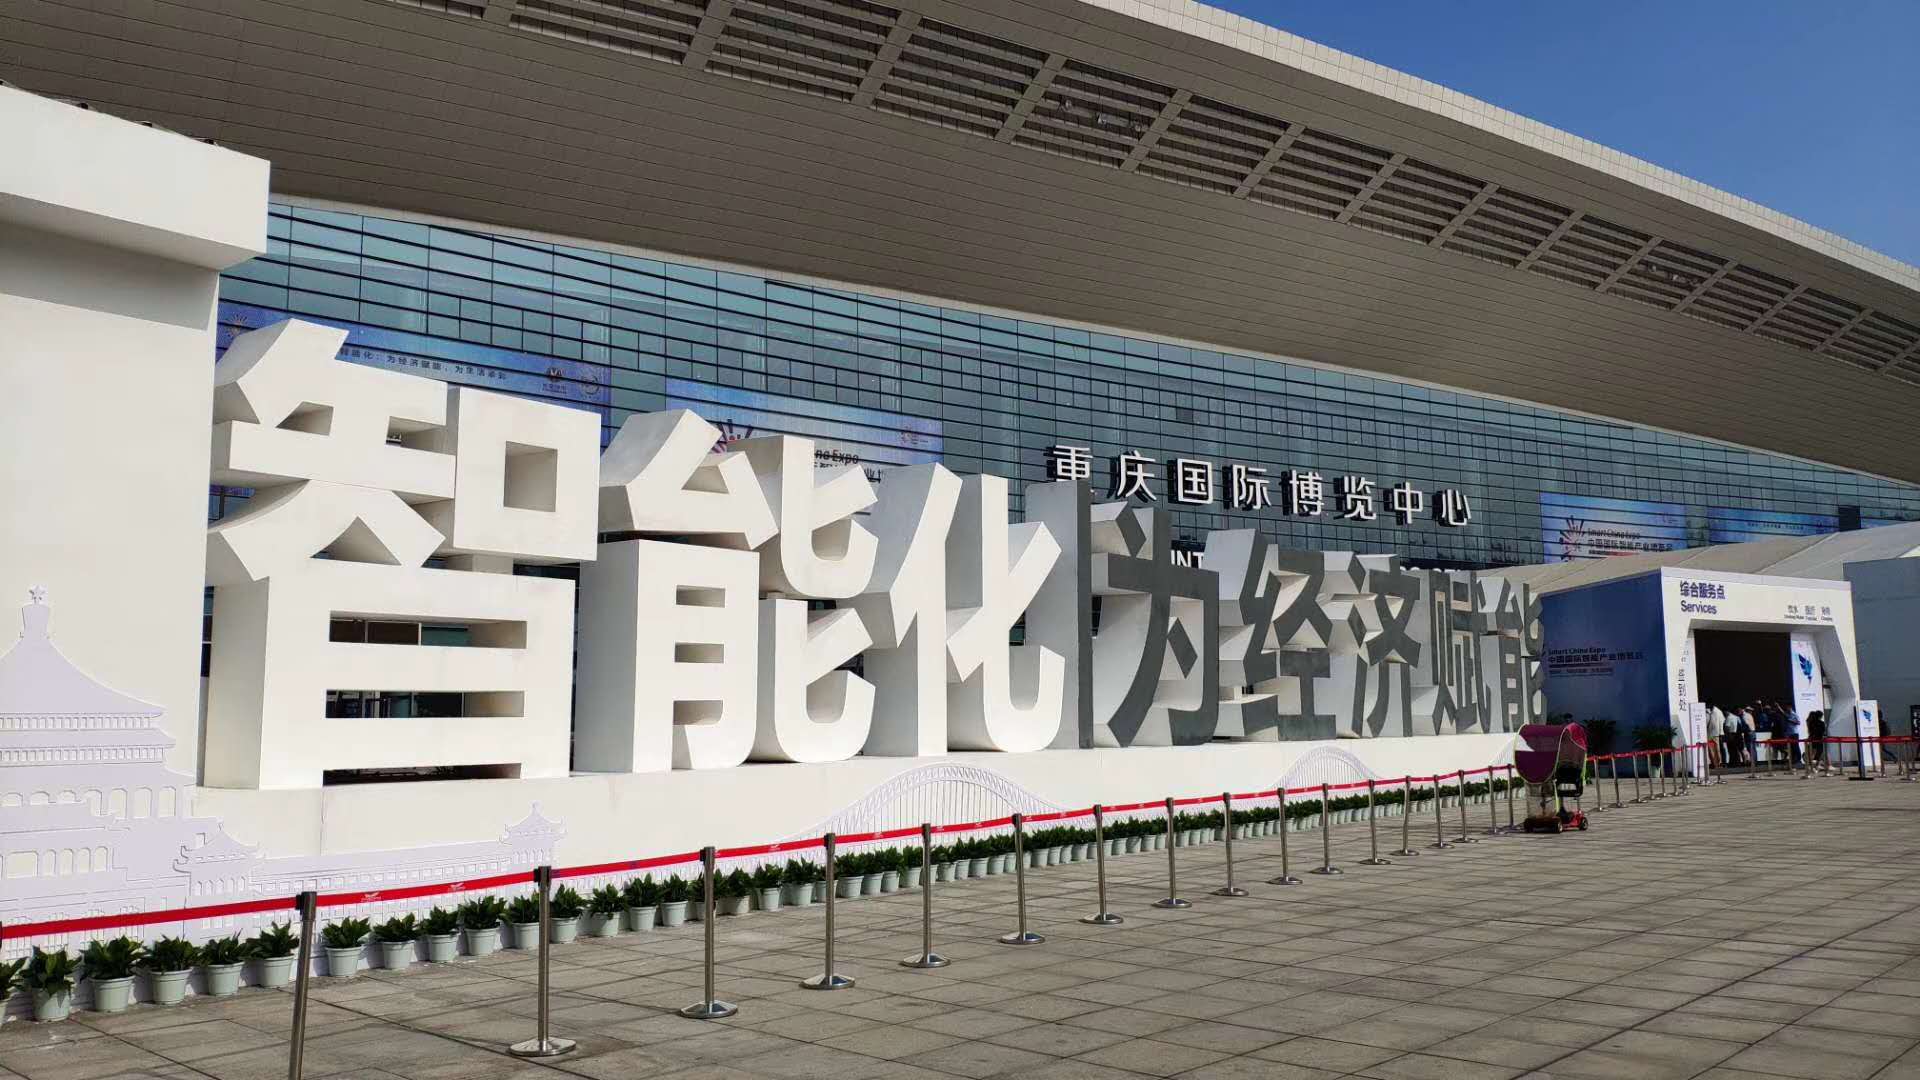 习近平向首届中国国际智能产业博览会致贺信，美林数据作为陕西省代表团成员亮相